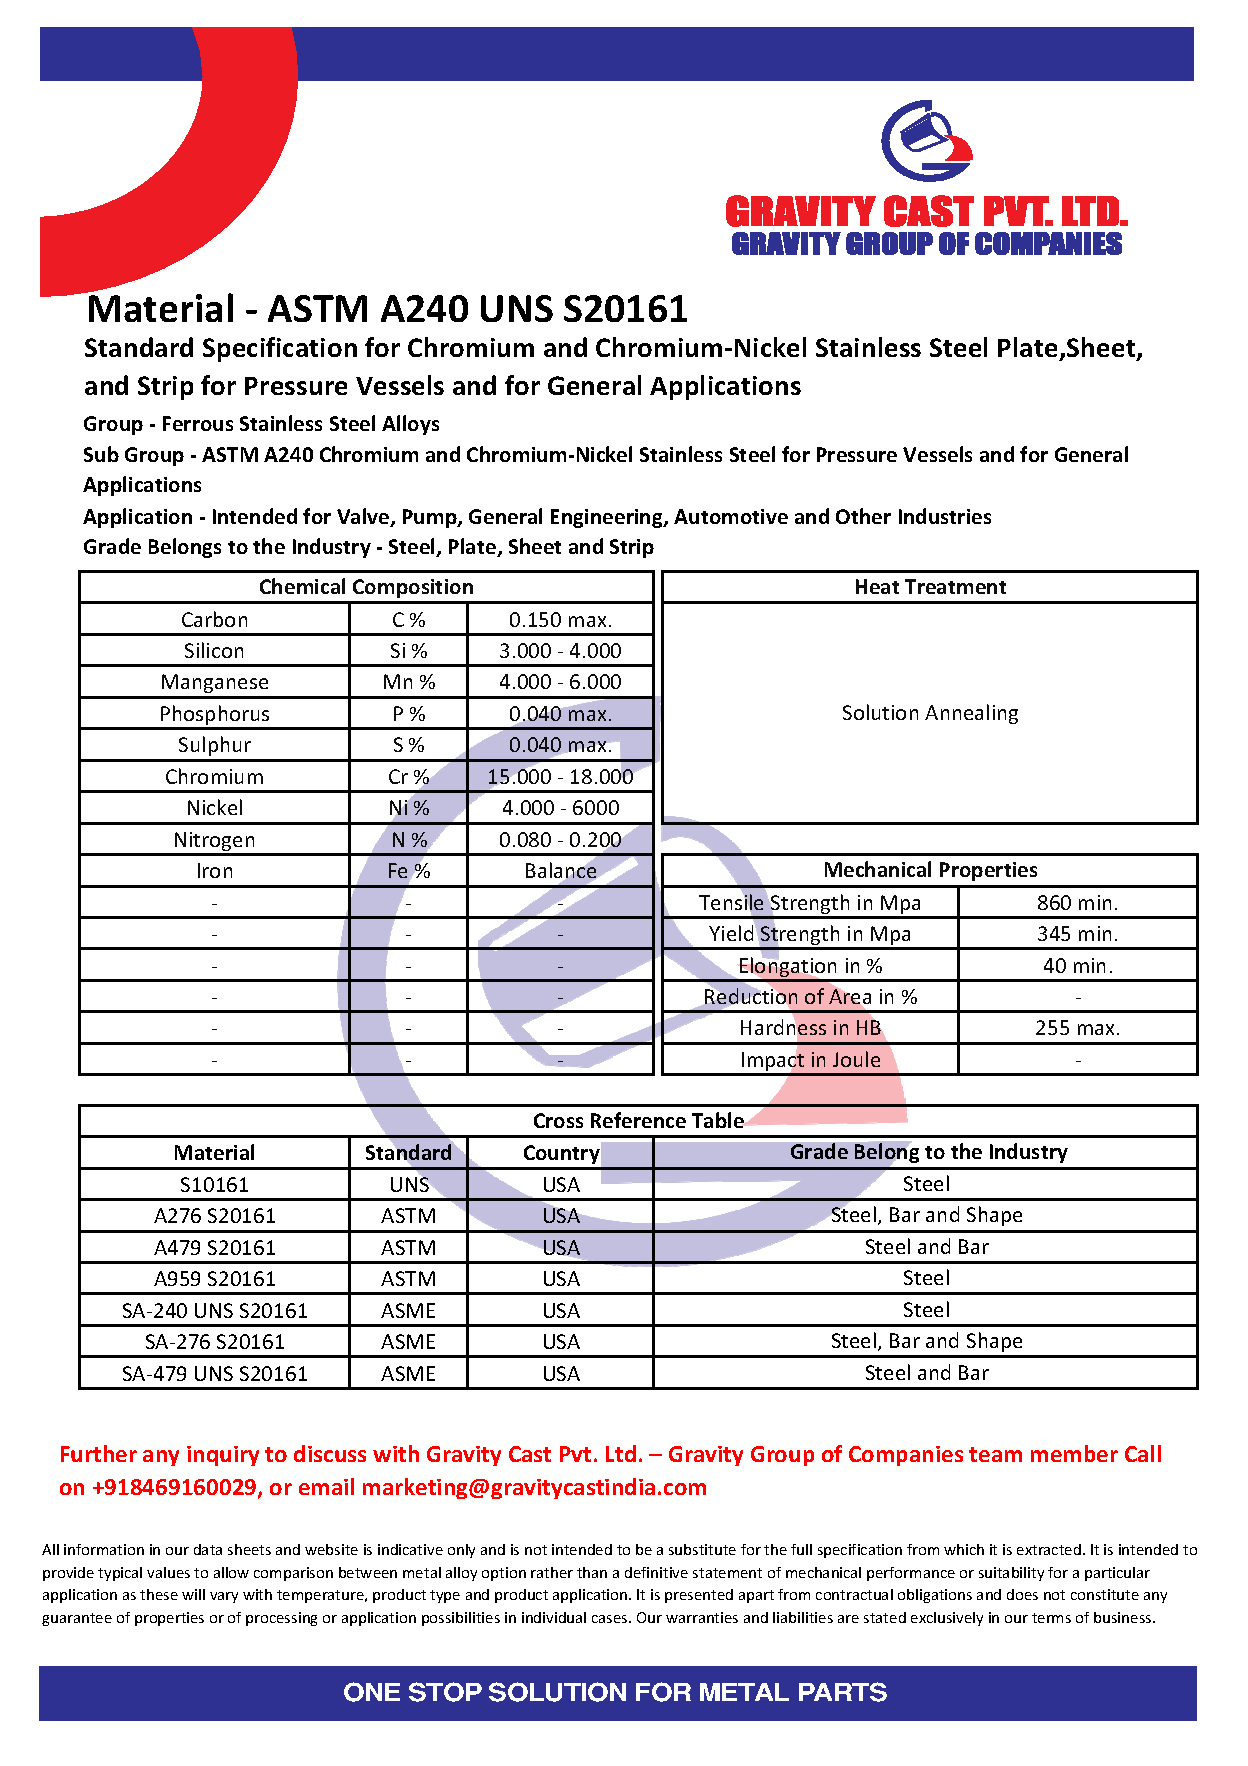 ASTM A240 UNS S20161.pdf